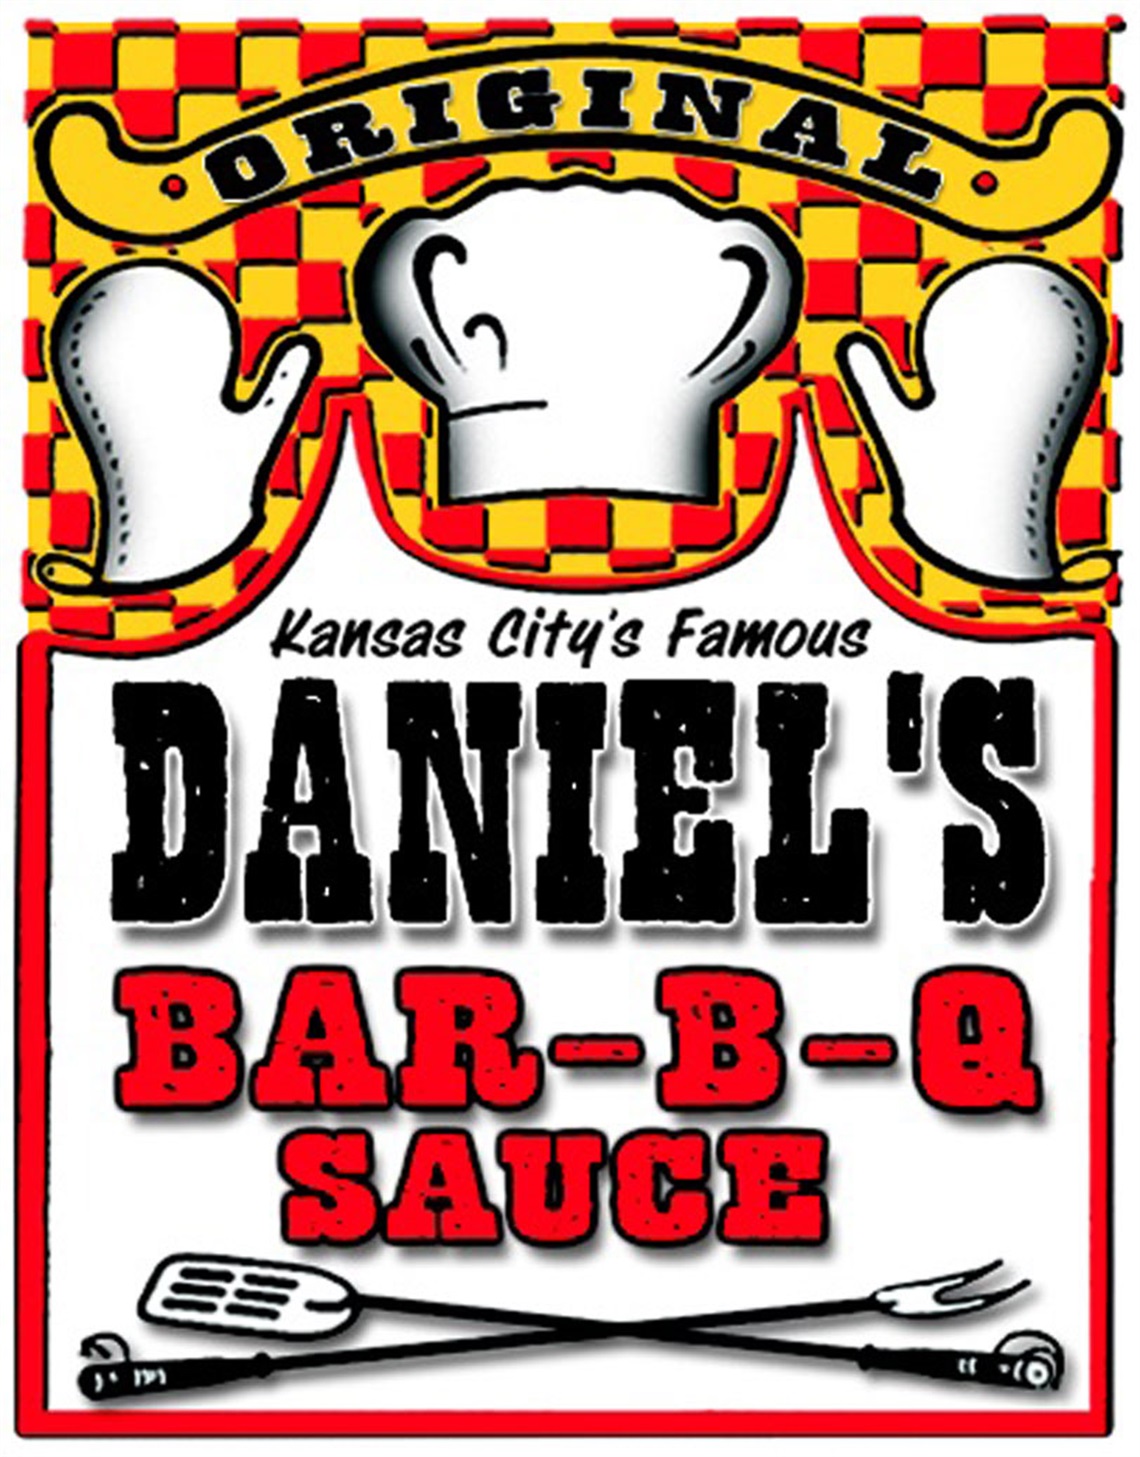 Daniel's Bar-b-q Sauces logo